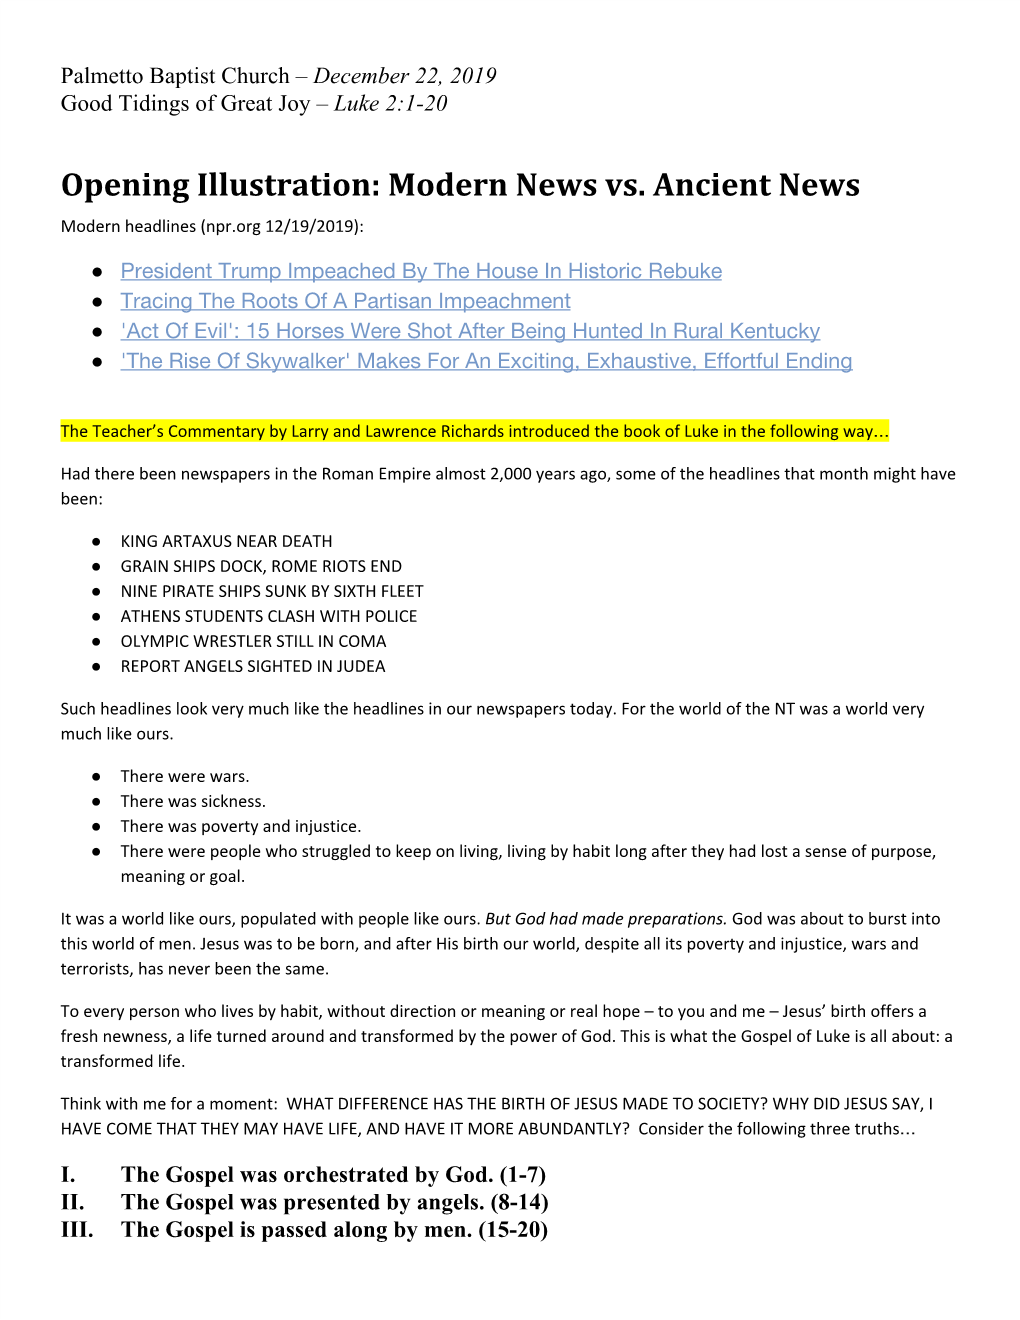 Opening Illustration: Modern News Vs